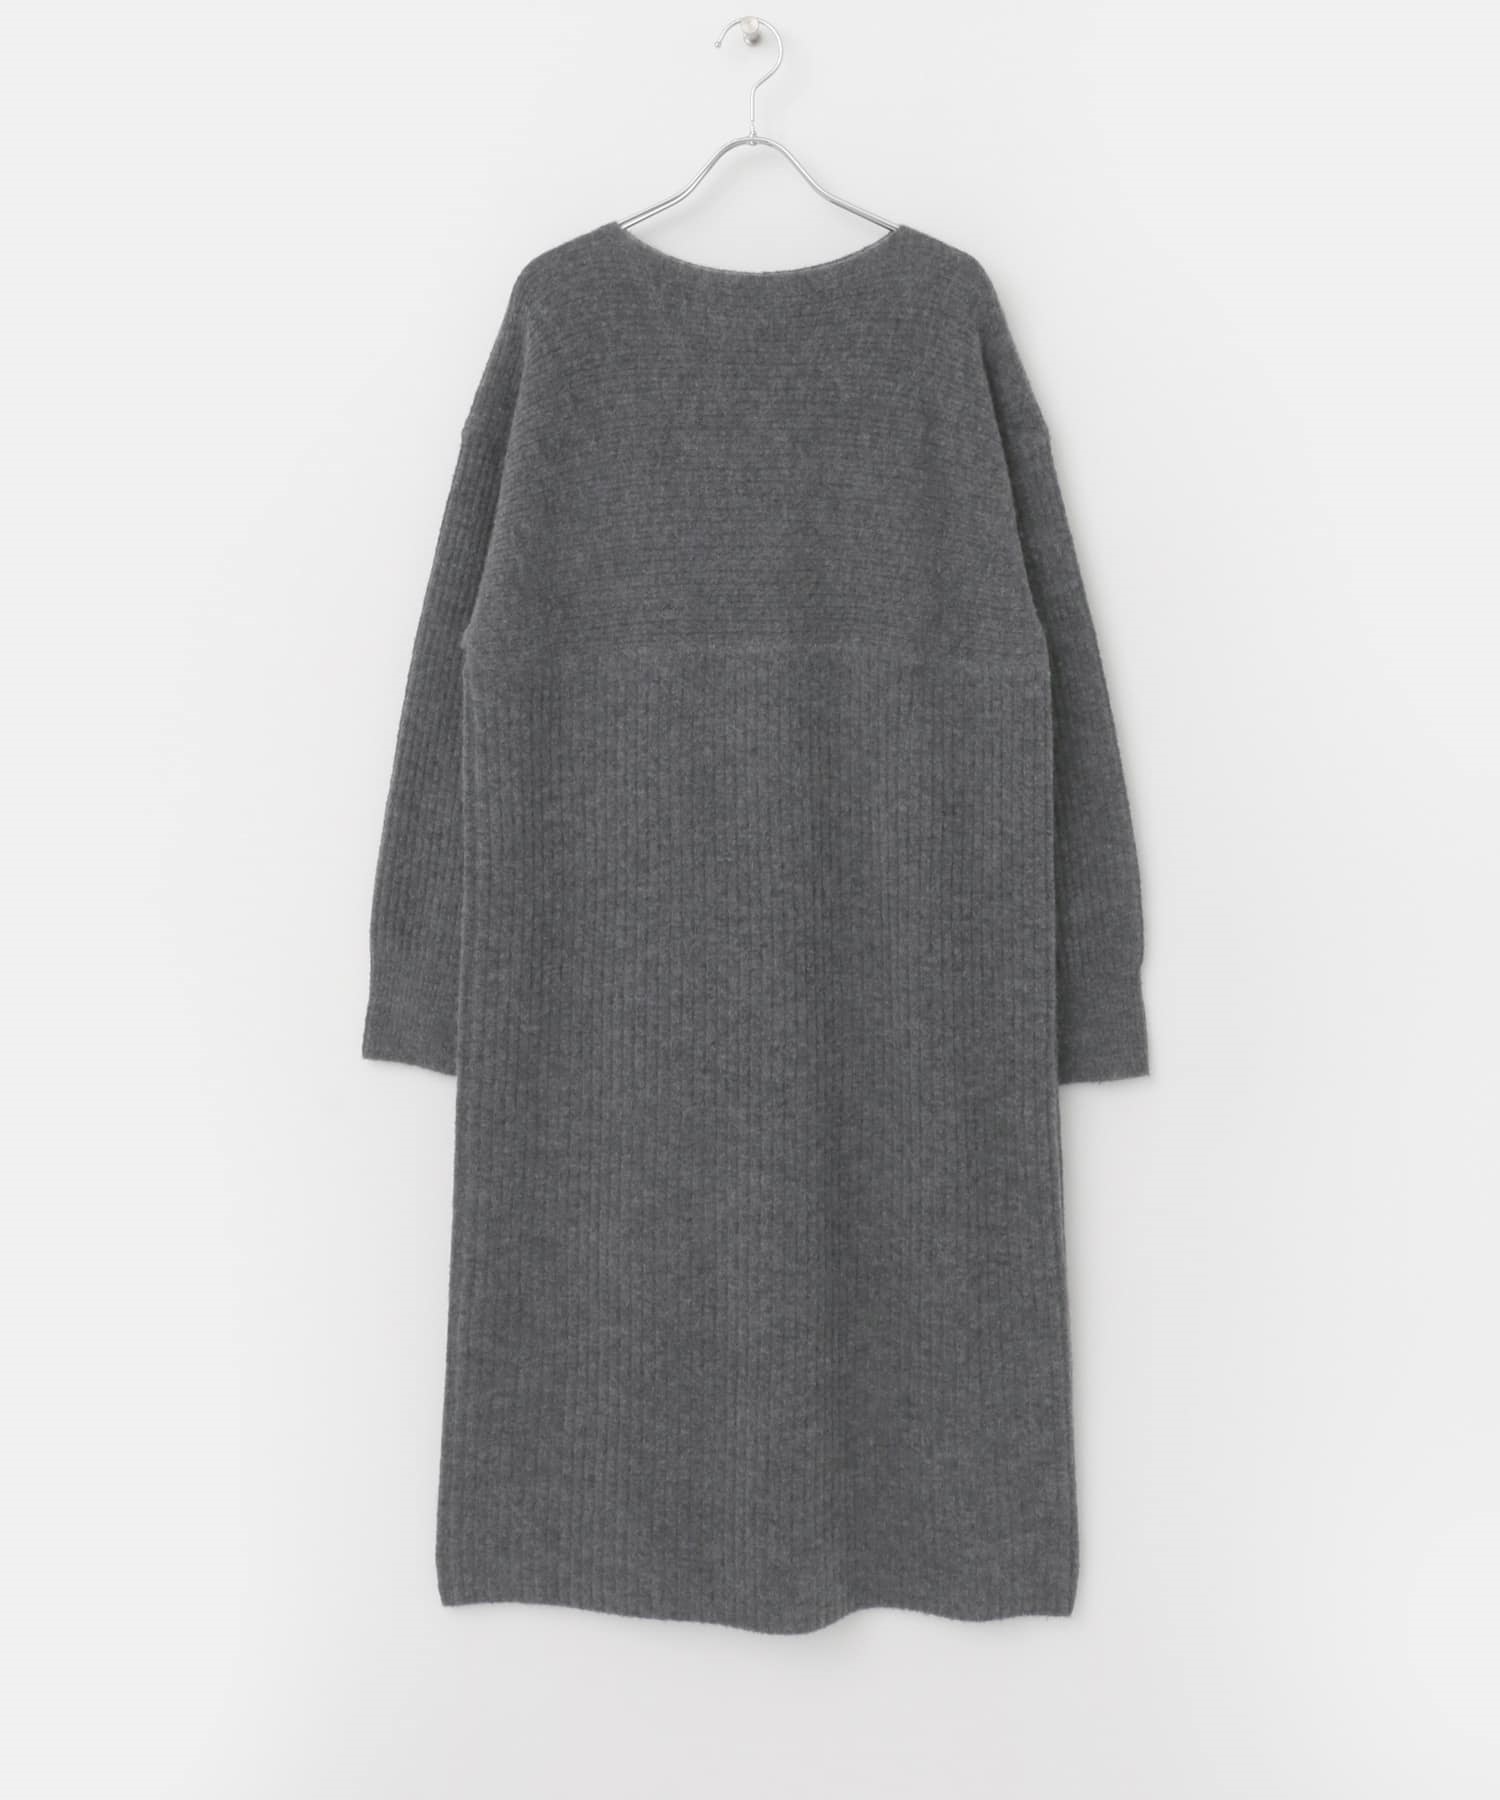 寬羅紋拼接針織洋裝(灰色-M-GRAY)